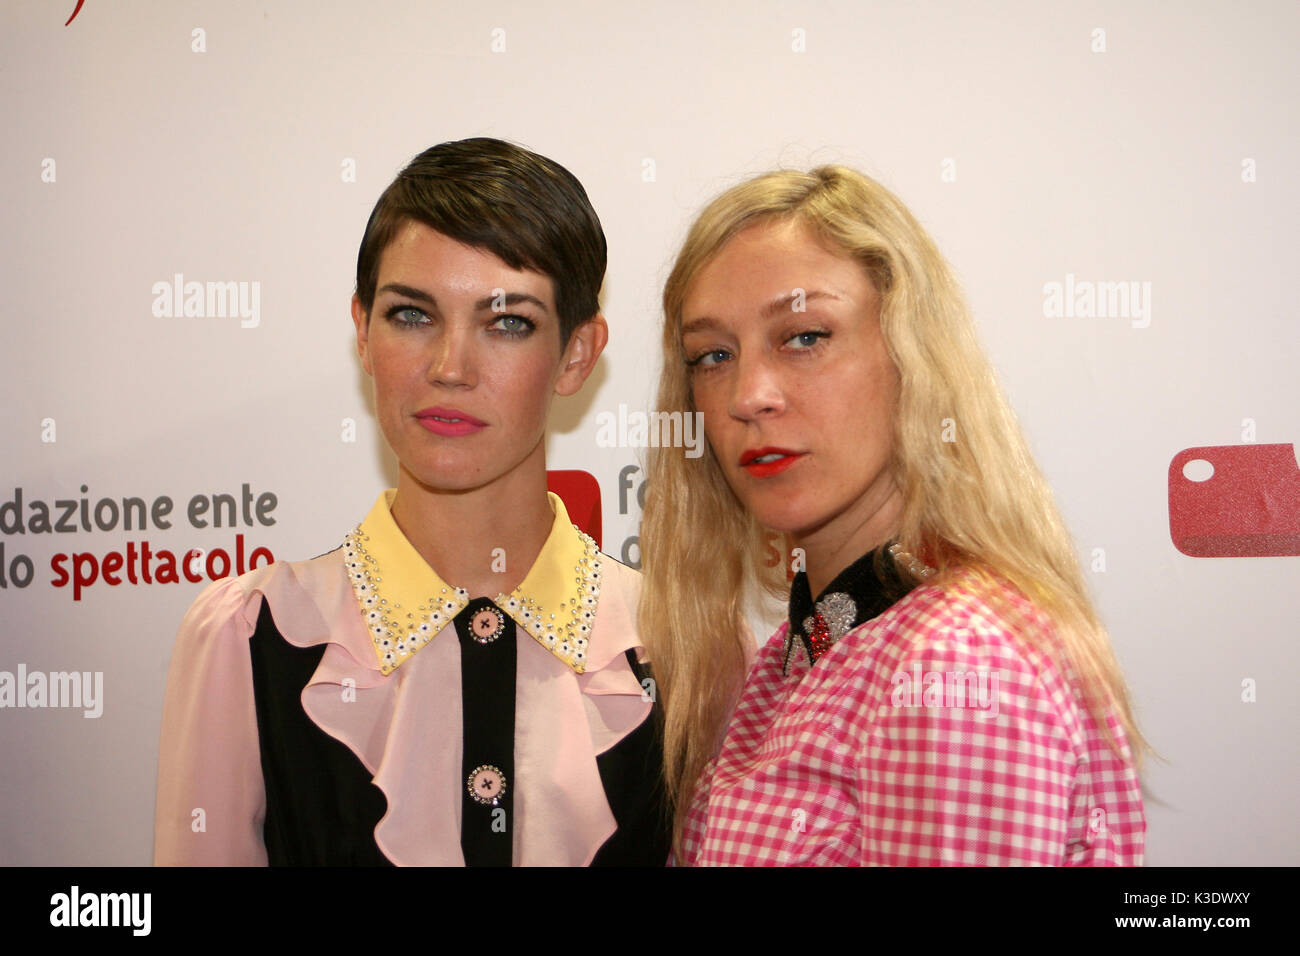 Venezia, Italia - 01 settembre: Celia Rowlson-Hall e Chloe Sevigny frequentare il 'Miu Miu donna Tales #1' photocall durante la 74a Venezia Film Festiva Foto Stock